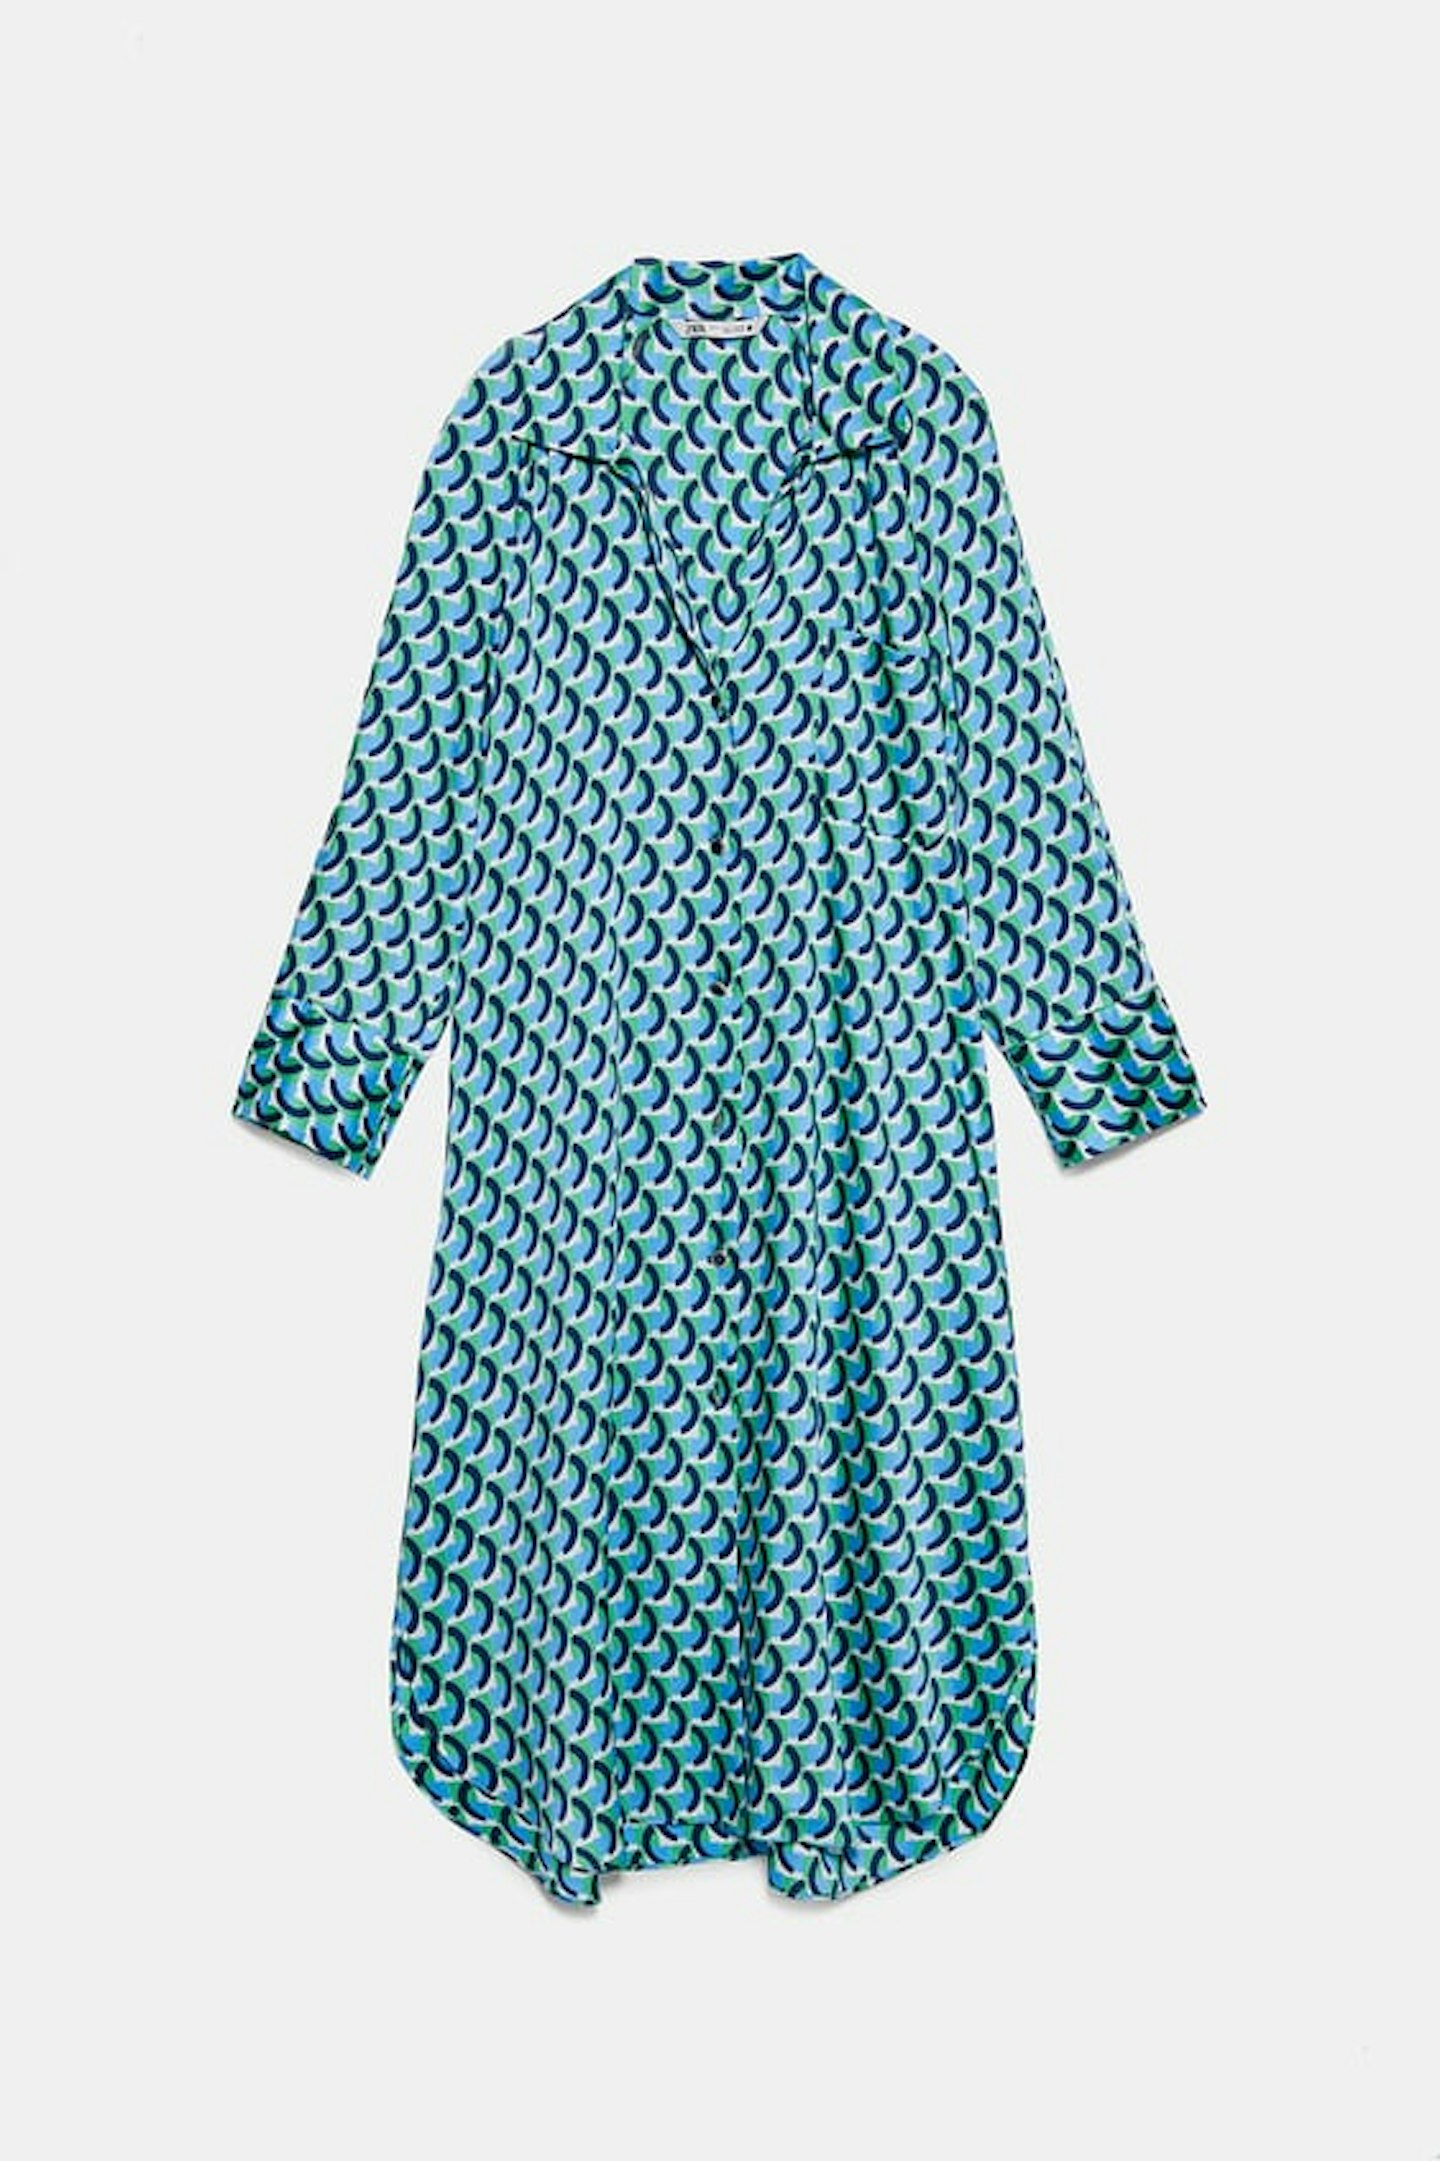 Zara, Geometric Print Dress, £49.99